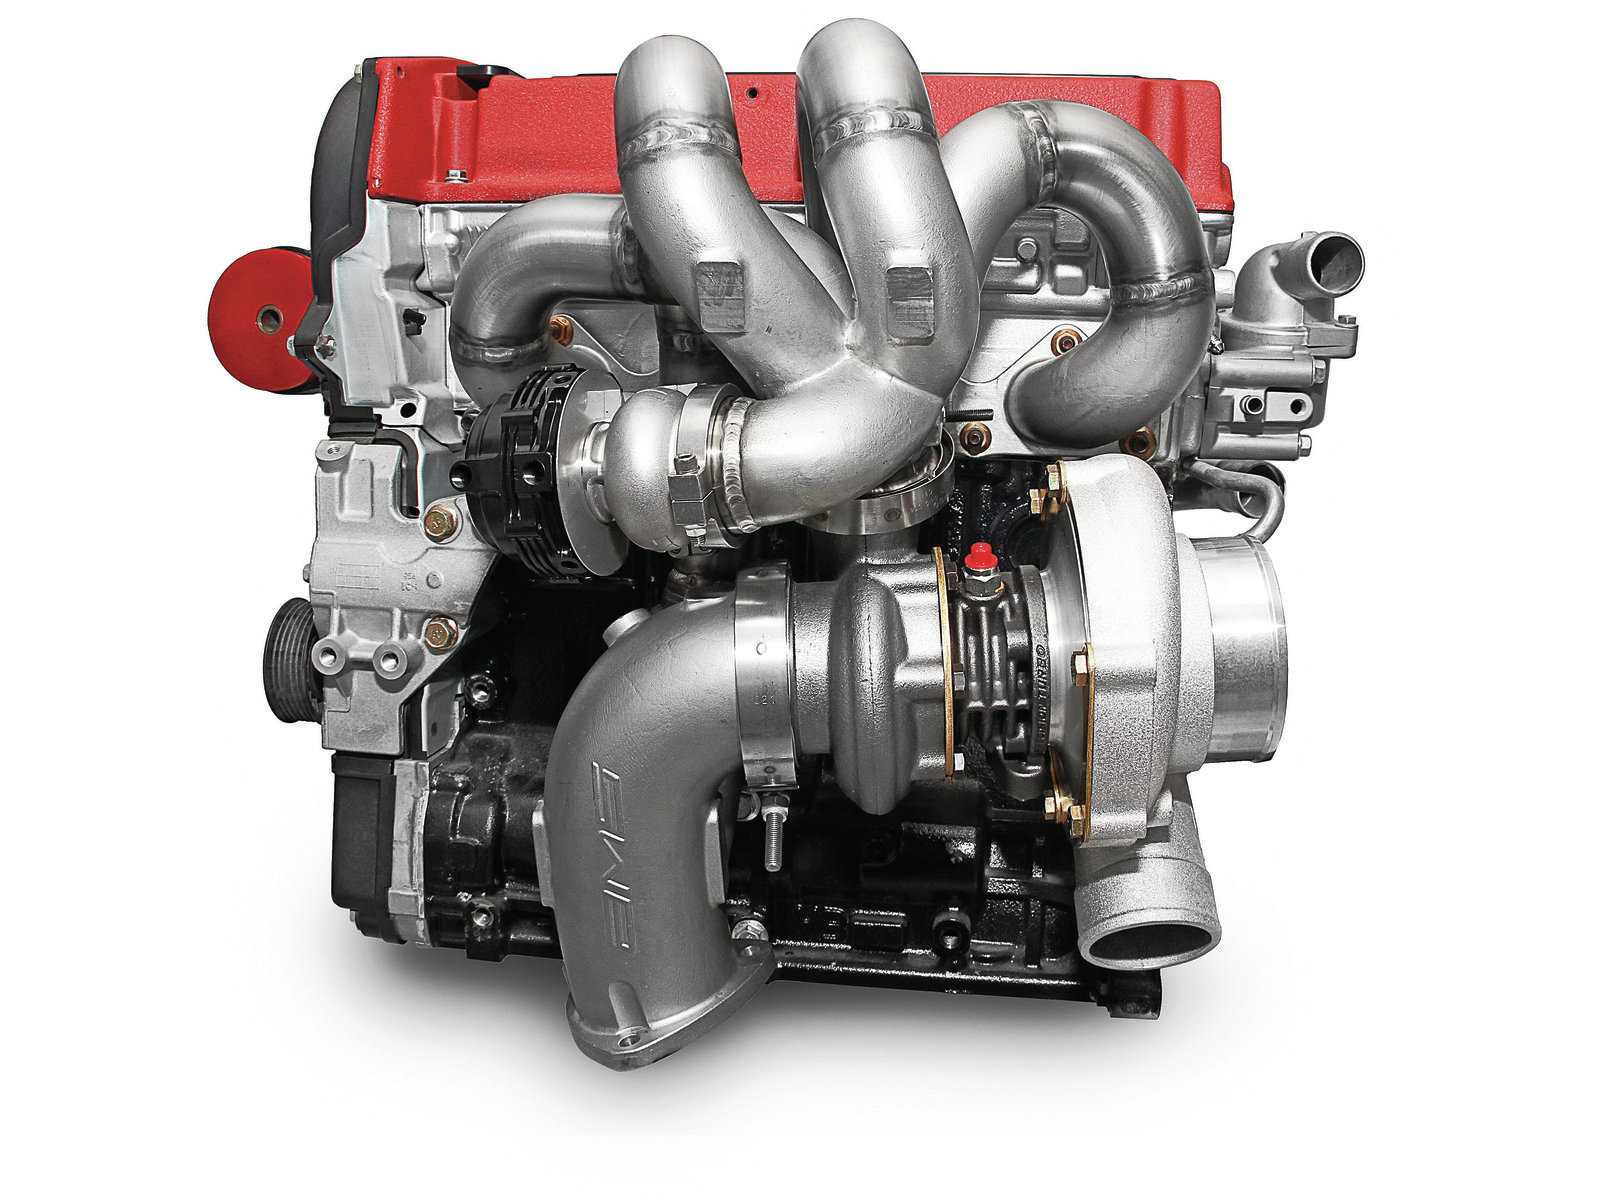 Как запустить дизельный двигатель Дизельные двигатели имеют другую систему запуска, чем бензиновые Бензиновые двигатели запускаются, когда топливо